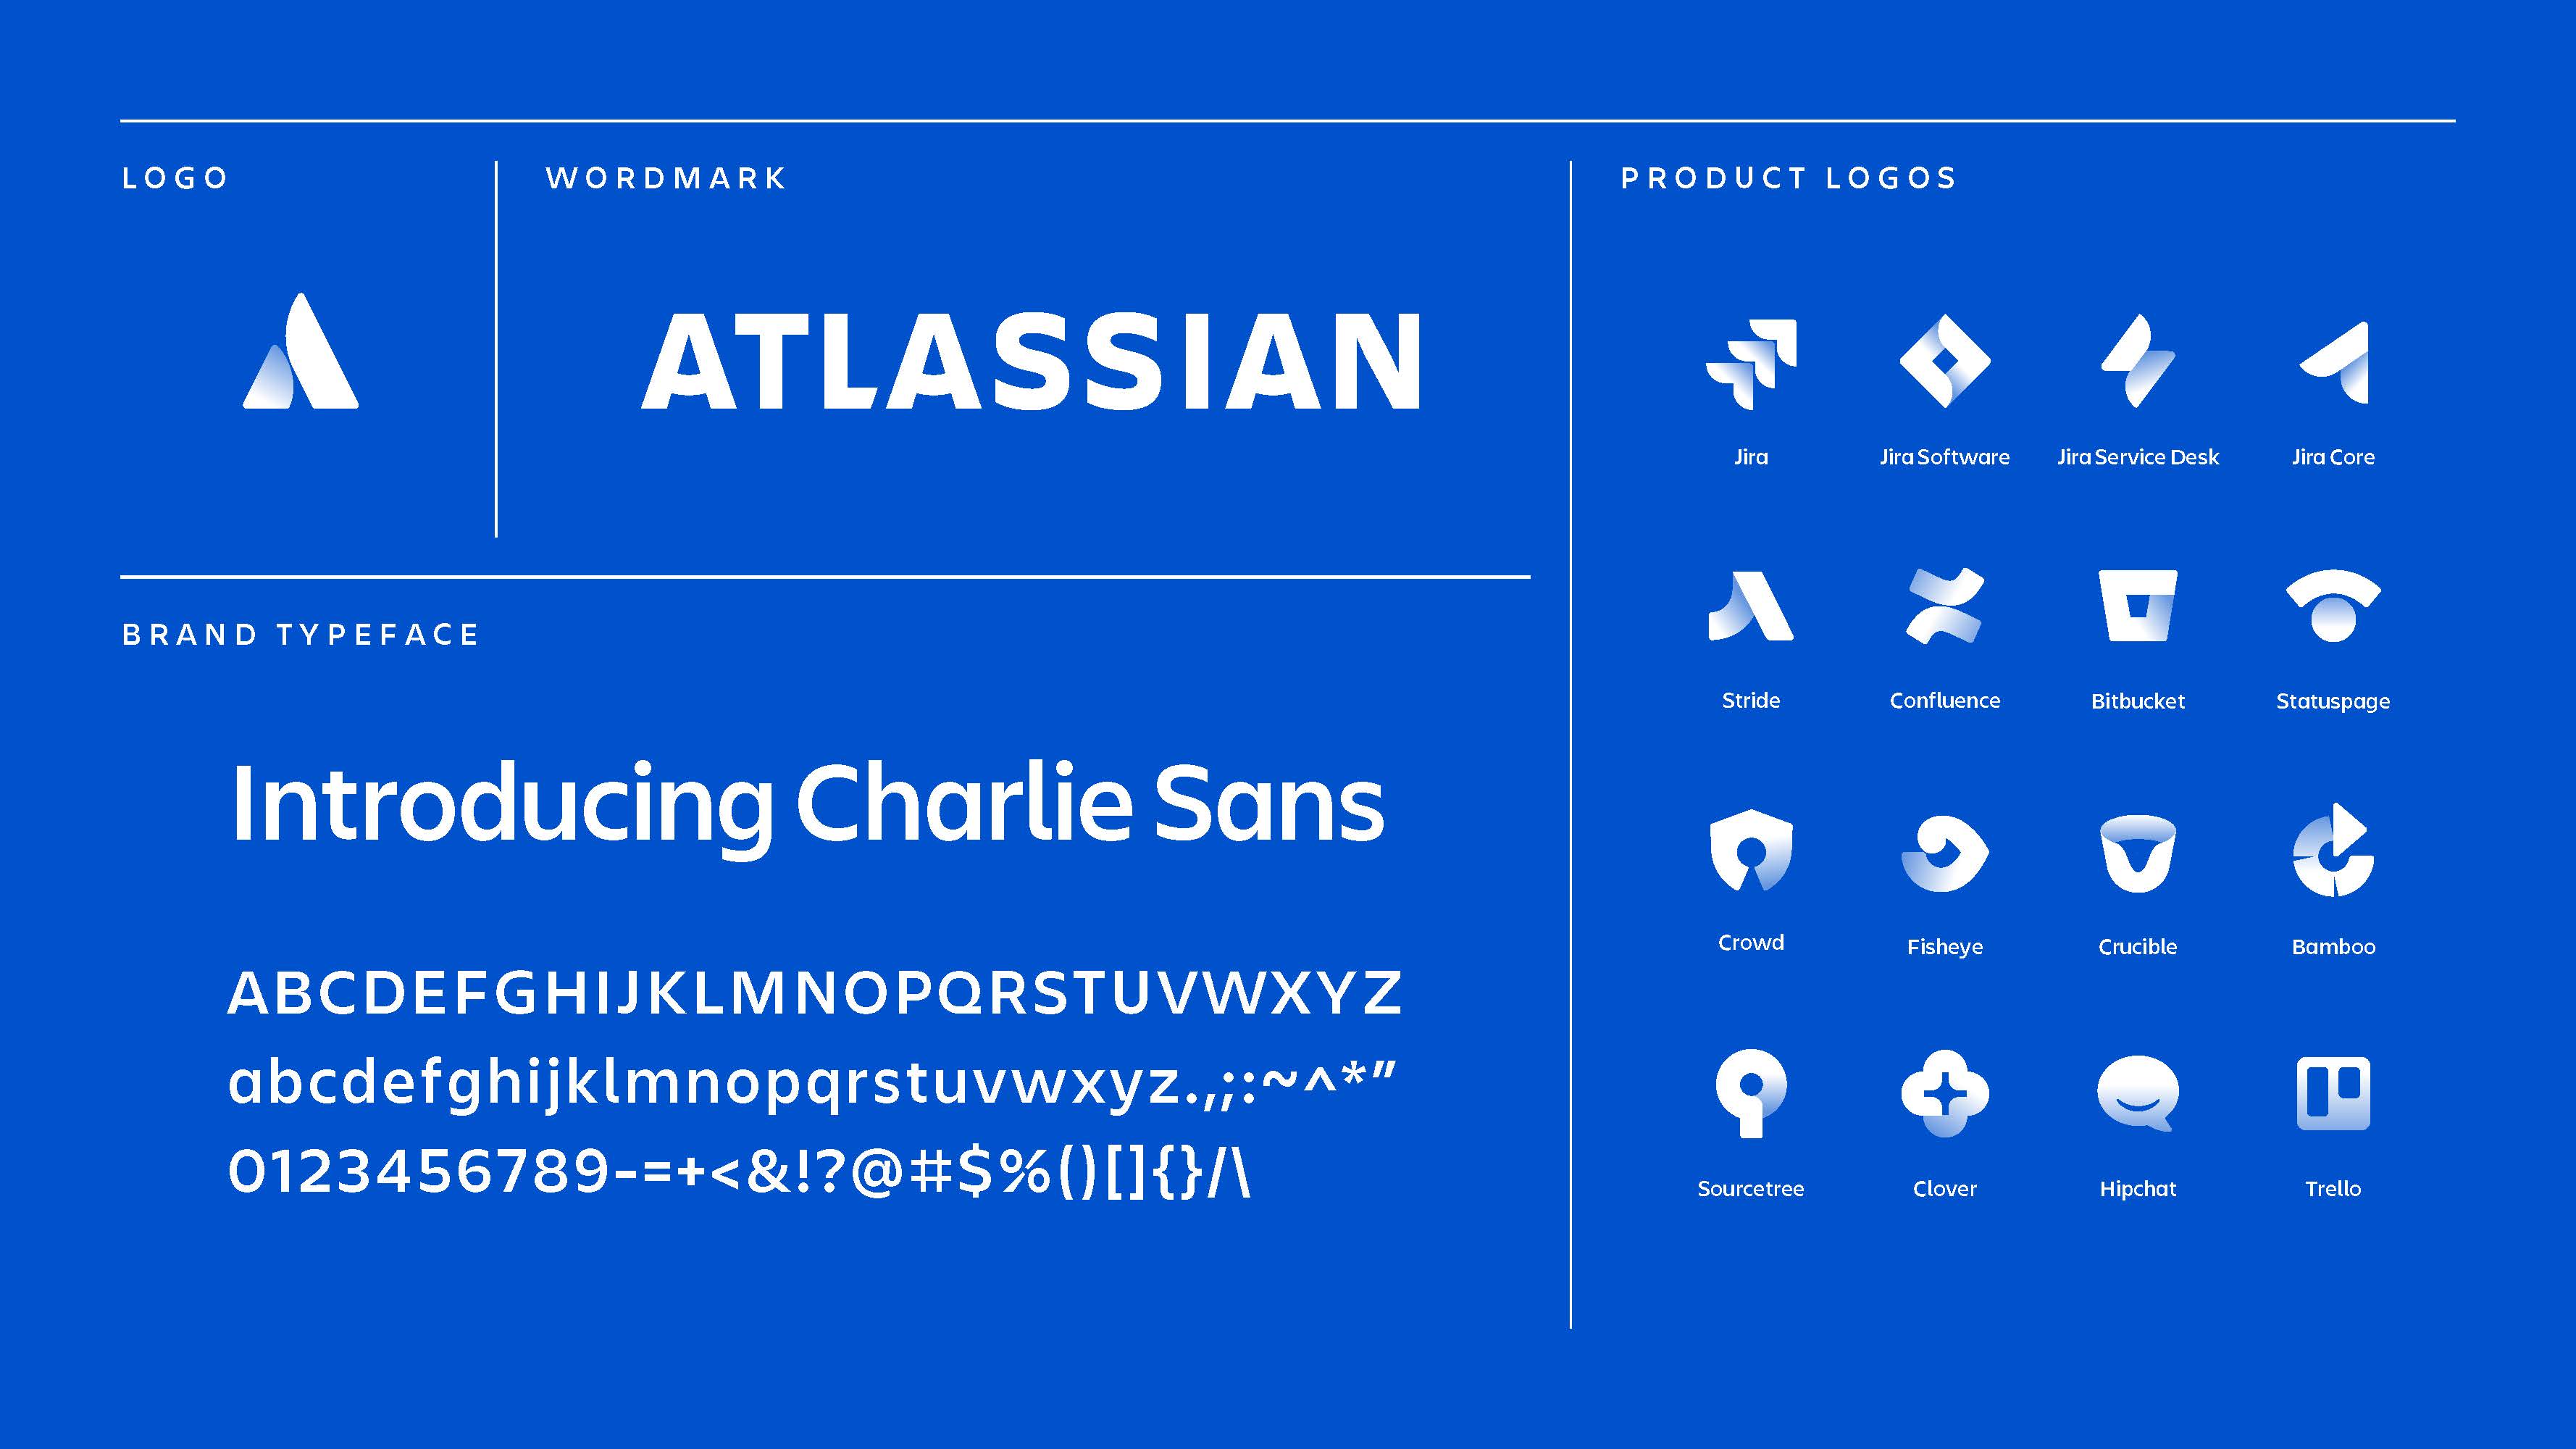 Confluence Logo - Our bold new brand - Atlassian Blog